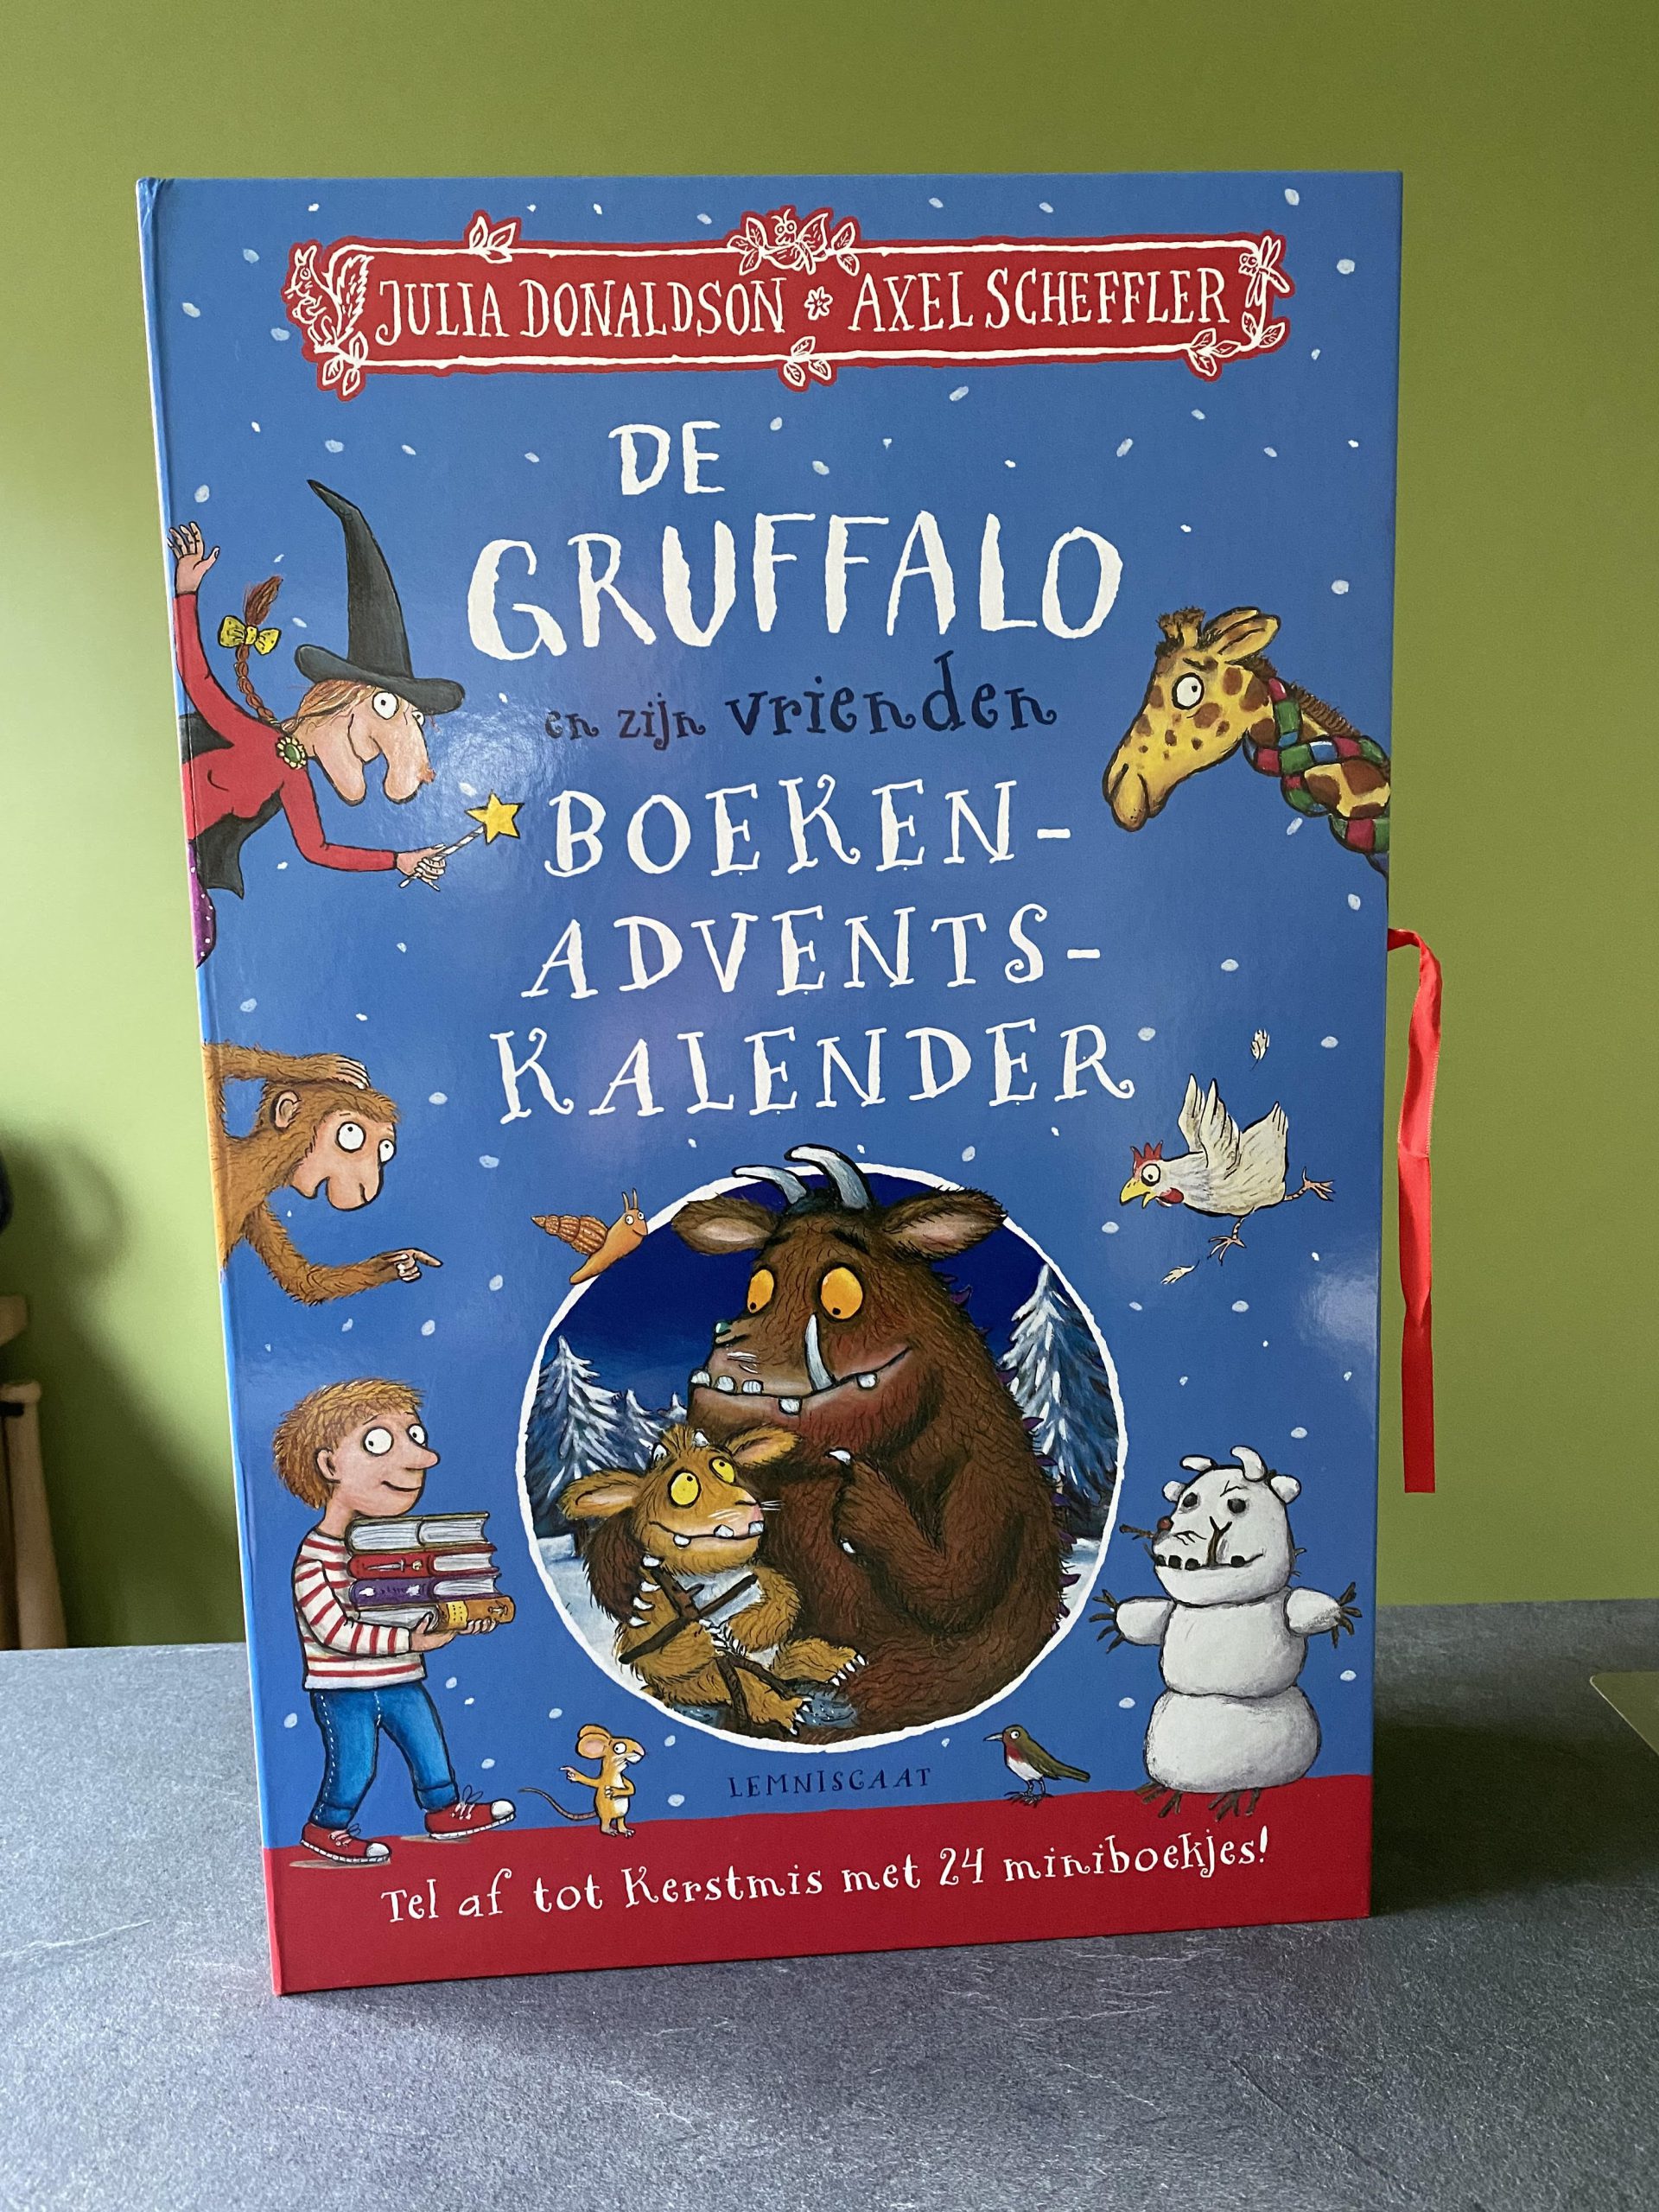 De Gruffalo en zijn vrienden boeken adventskalender